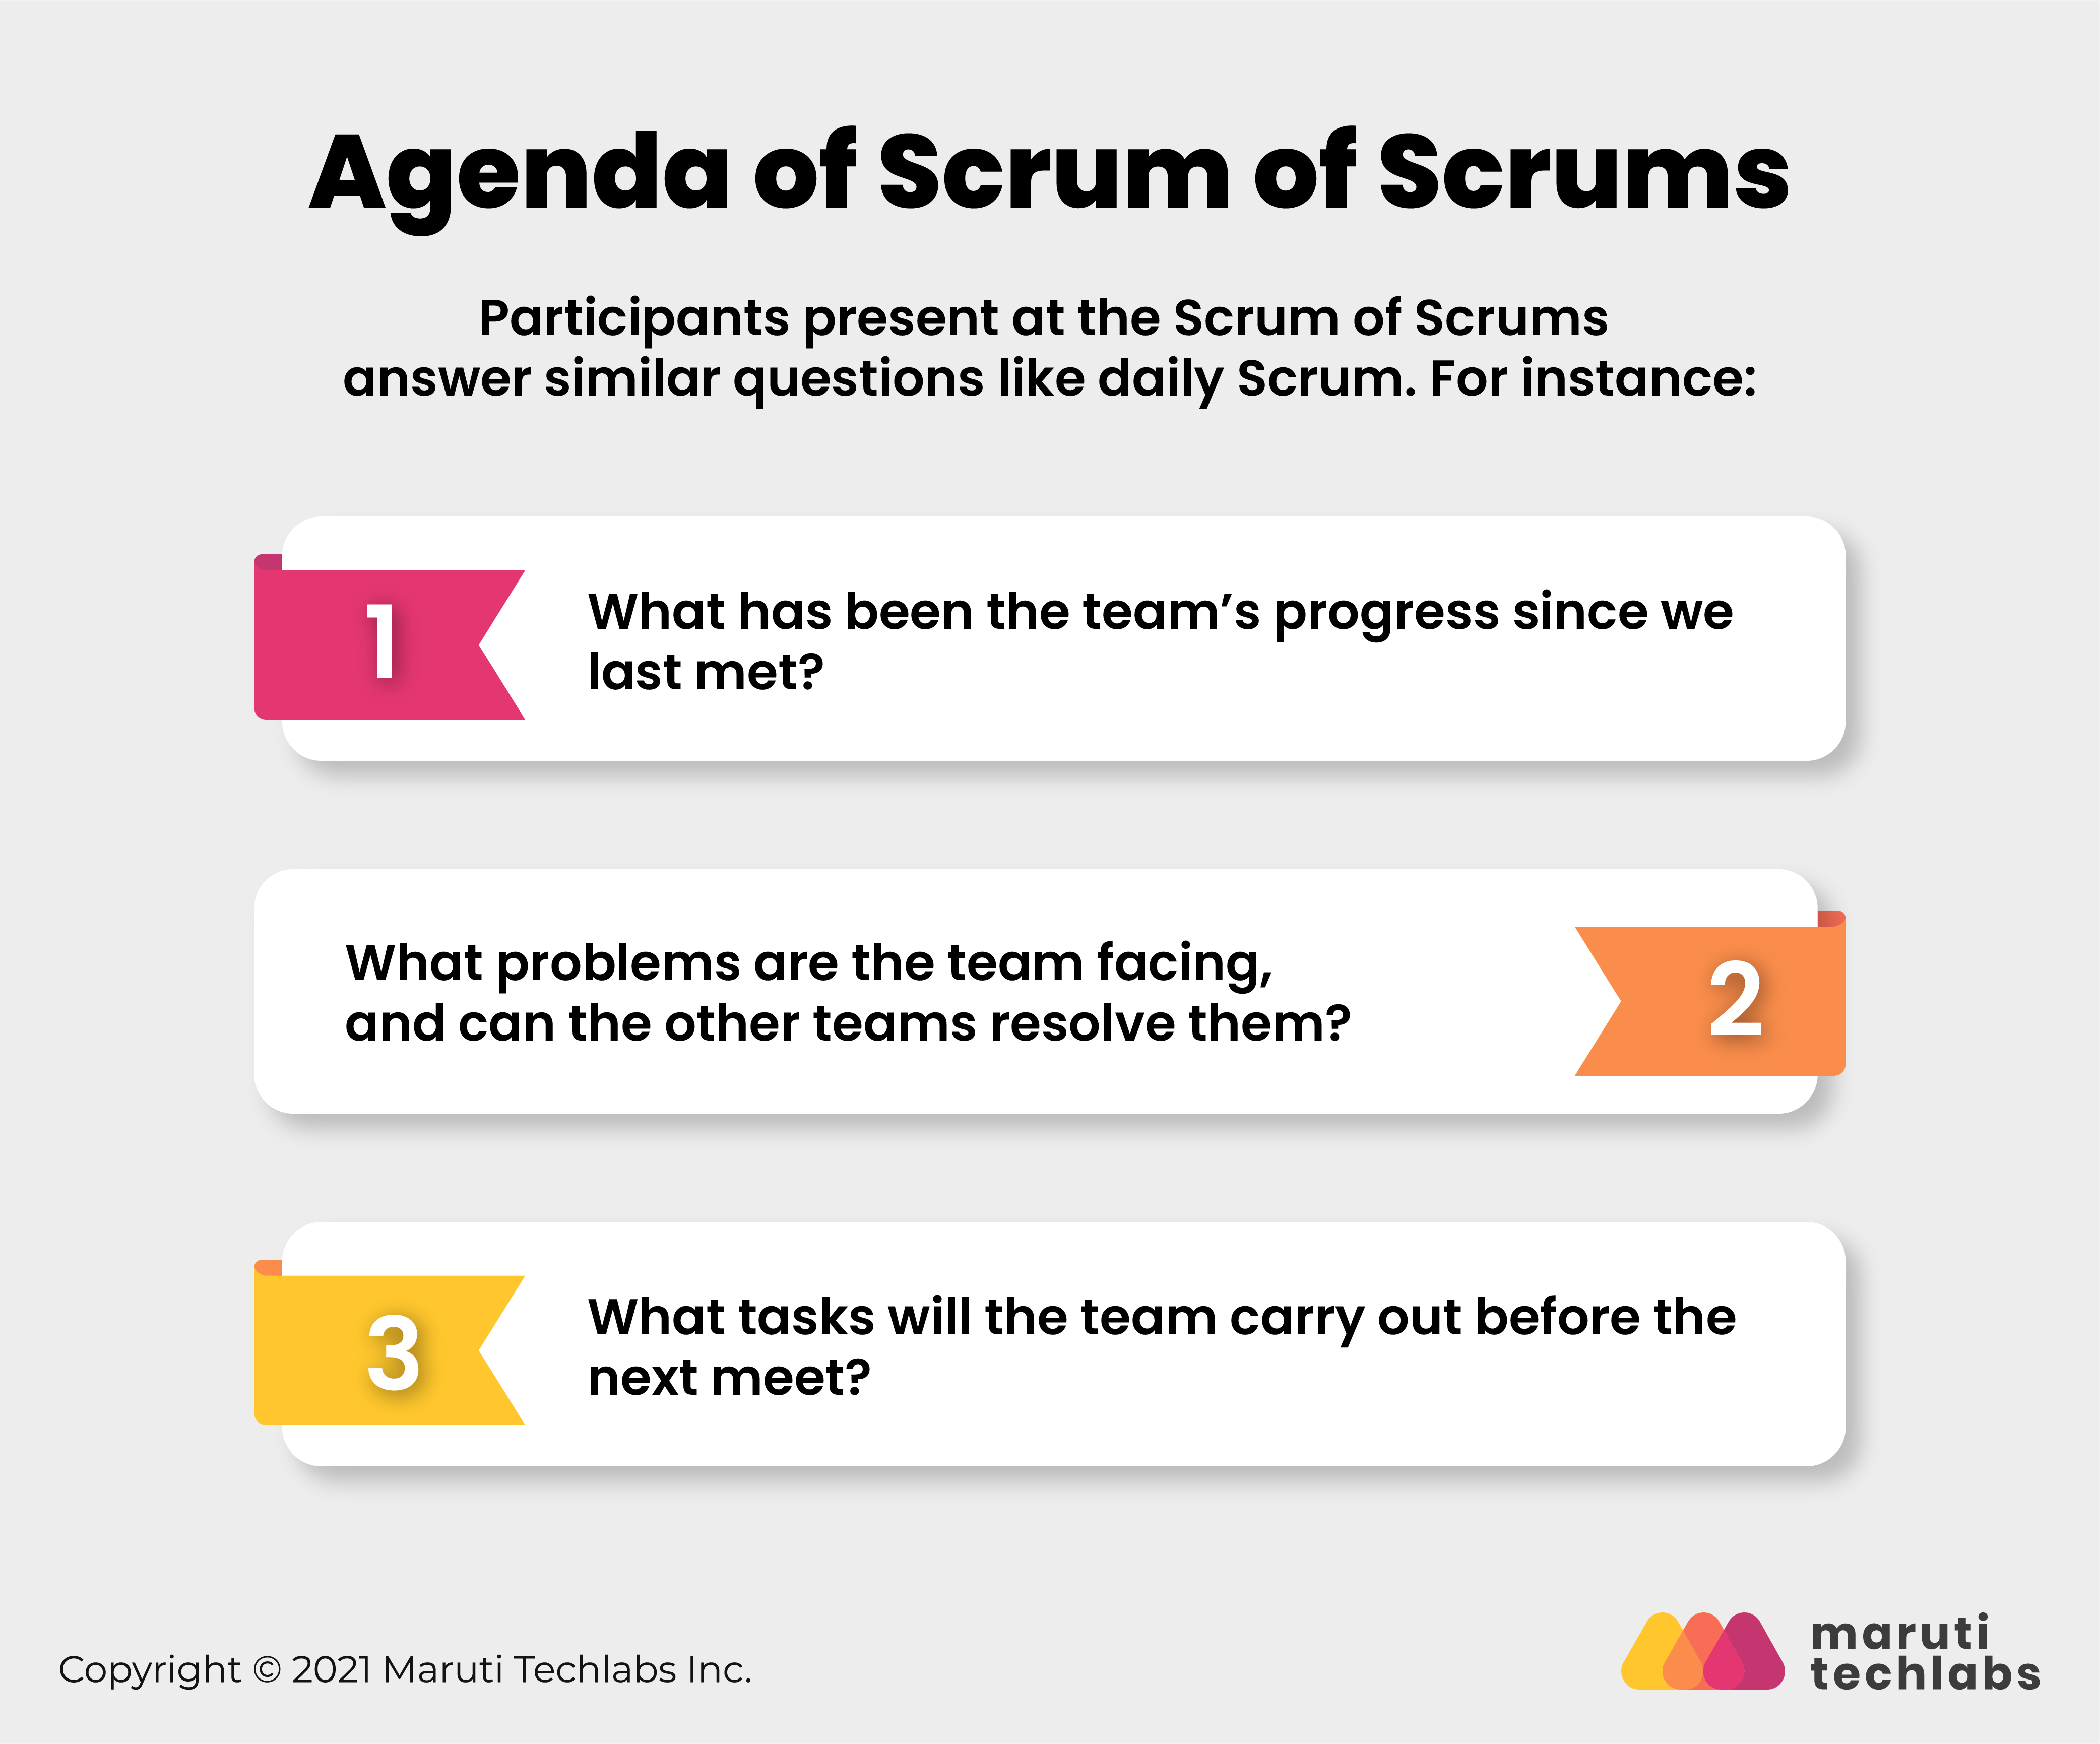 Agenda of Scrum of Scrums